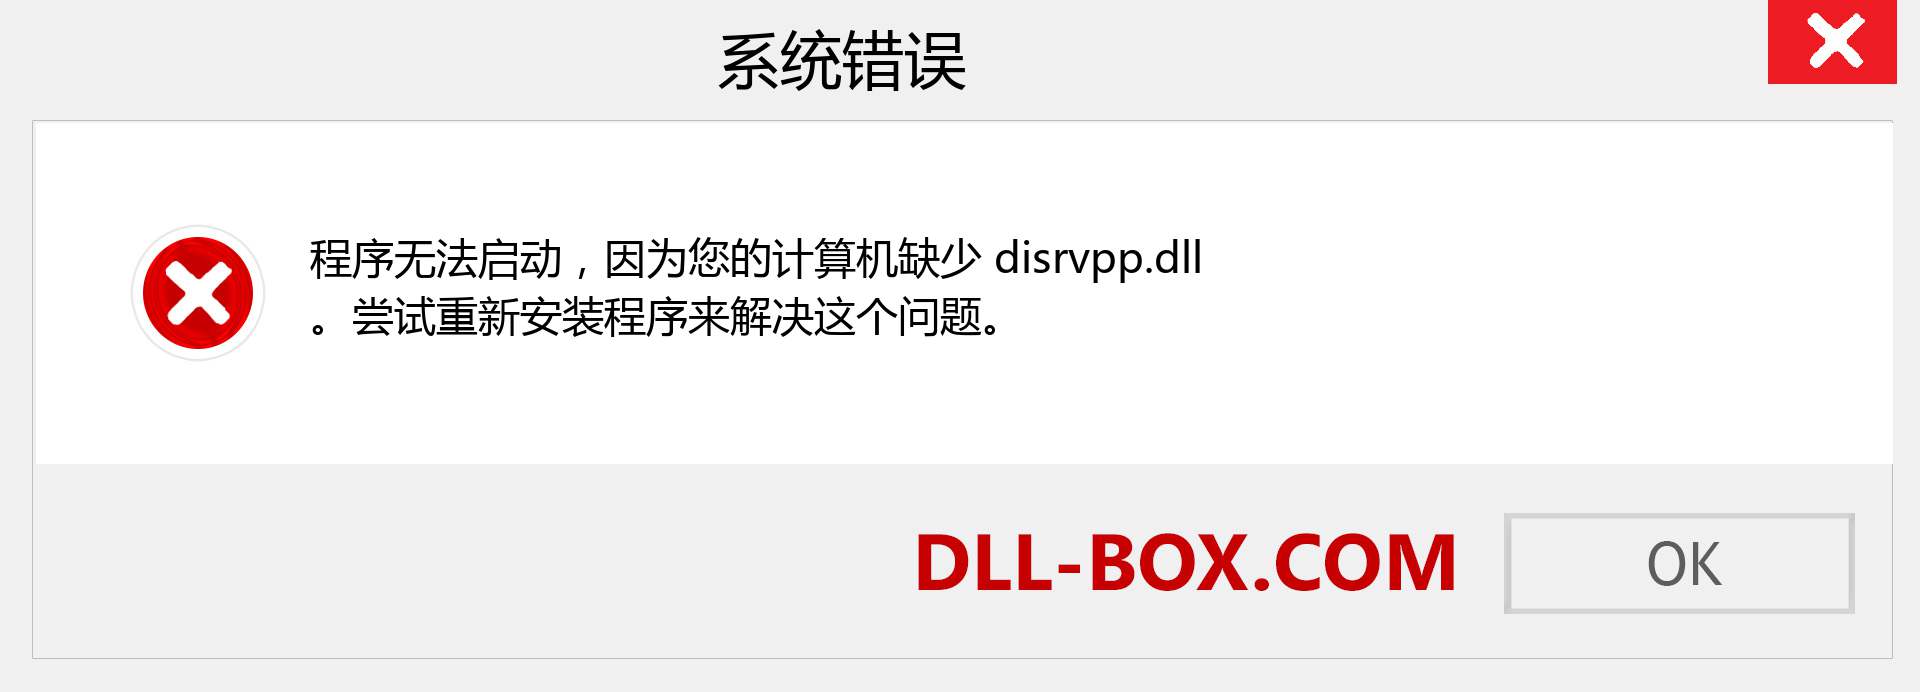 disrvpp.dll 文件丢失？。 适用于 Windows 7、8、10 的下载 - 修复 Windows、照片、图像上的 disrvpp dll 丢失错误